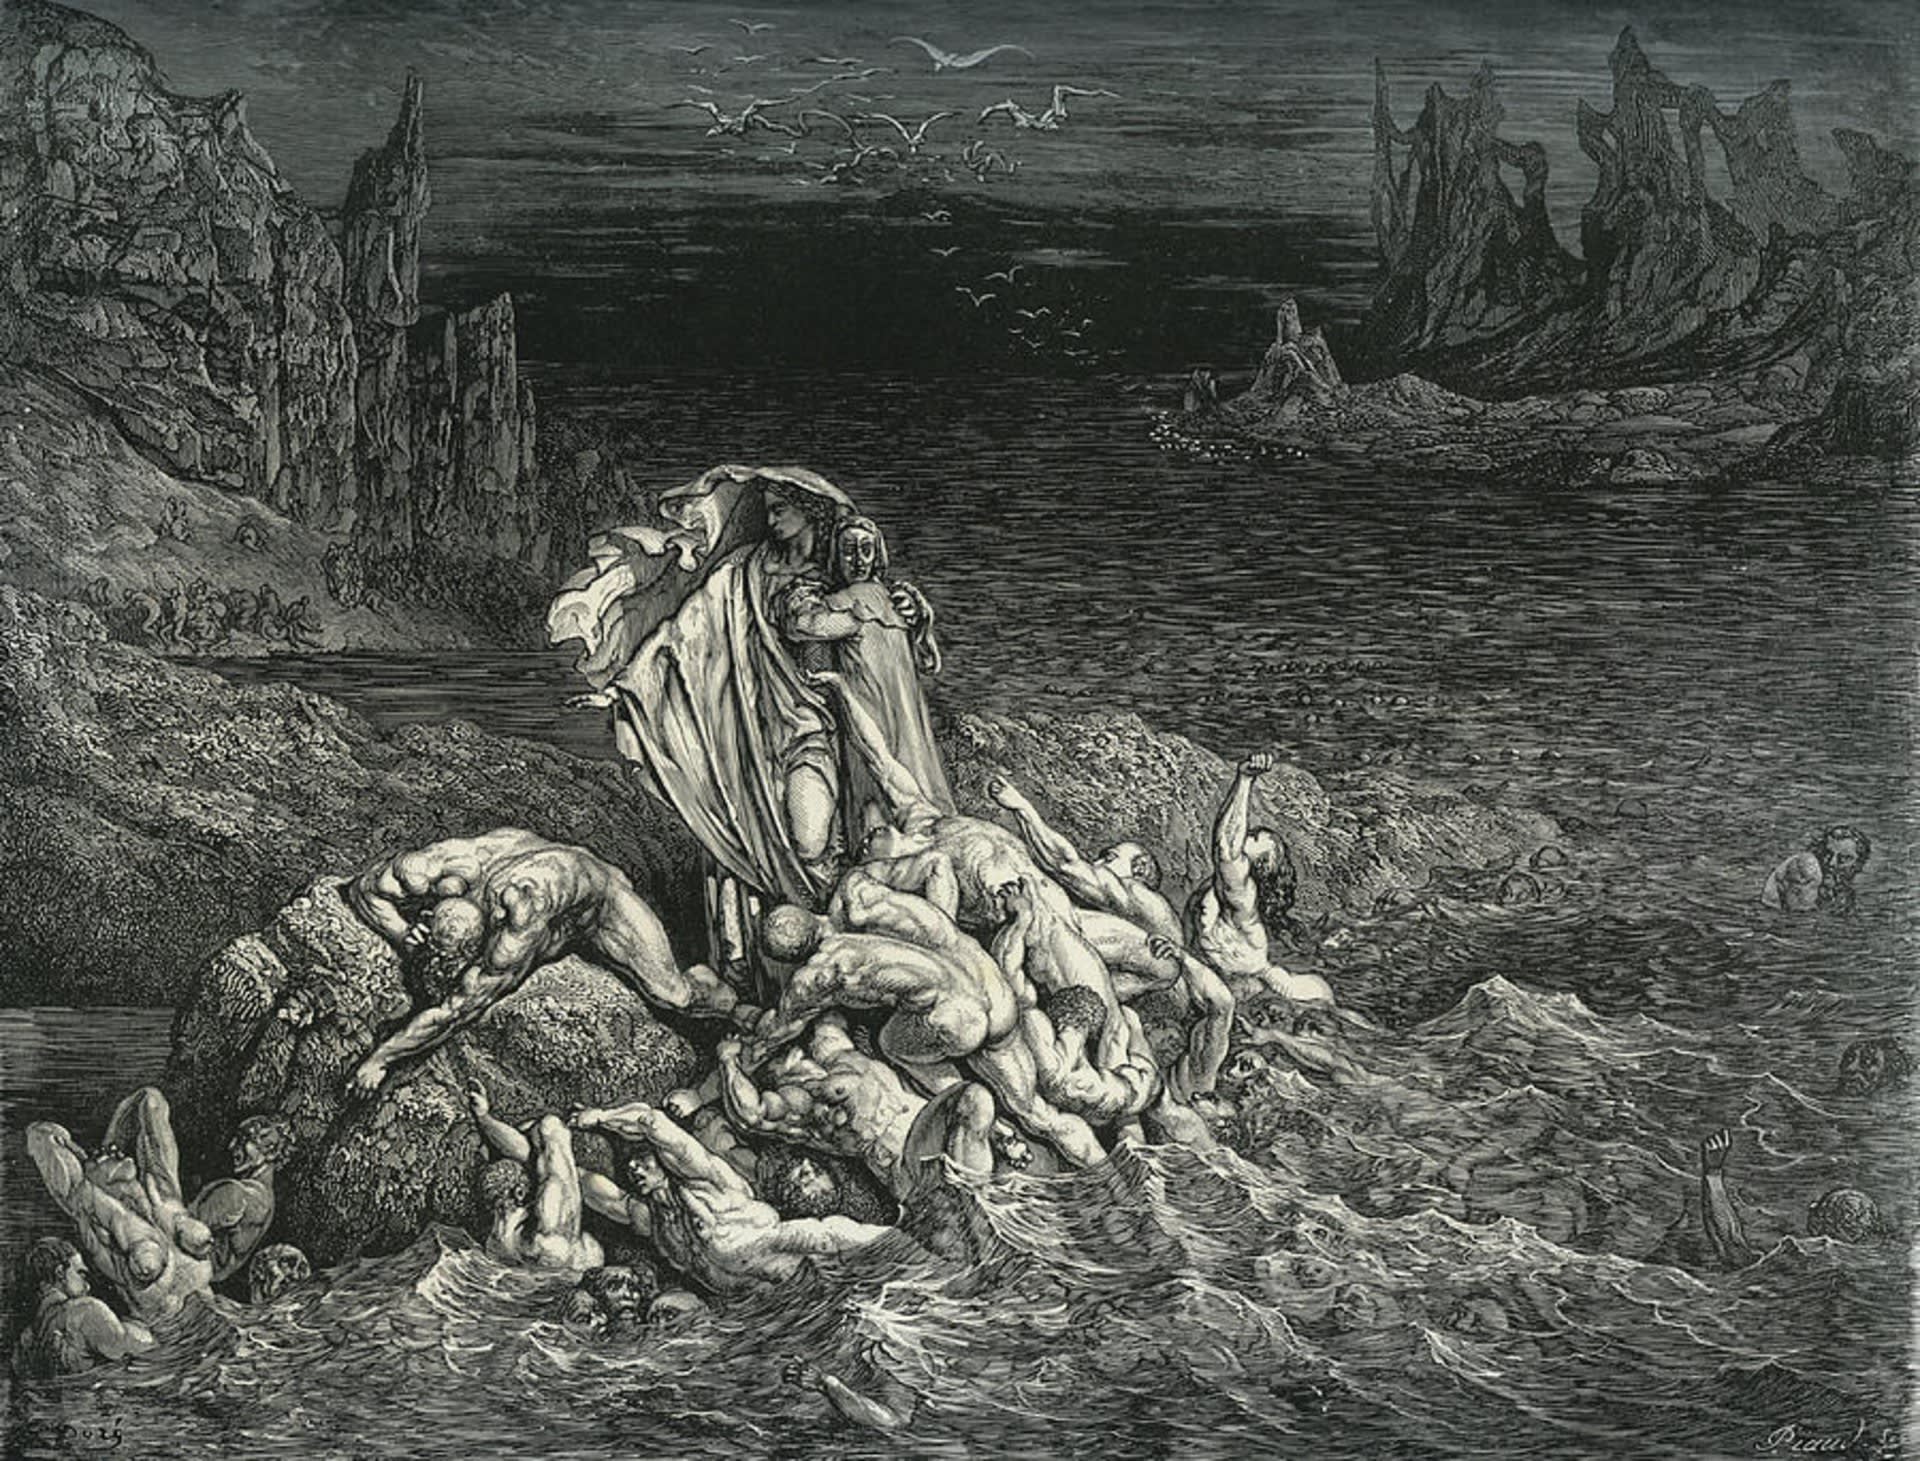 Gustave Doré, Illustration in Dante’s Divine Comedy (19th century)